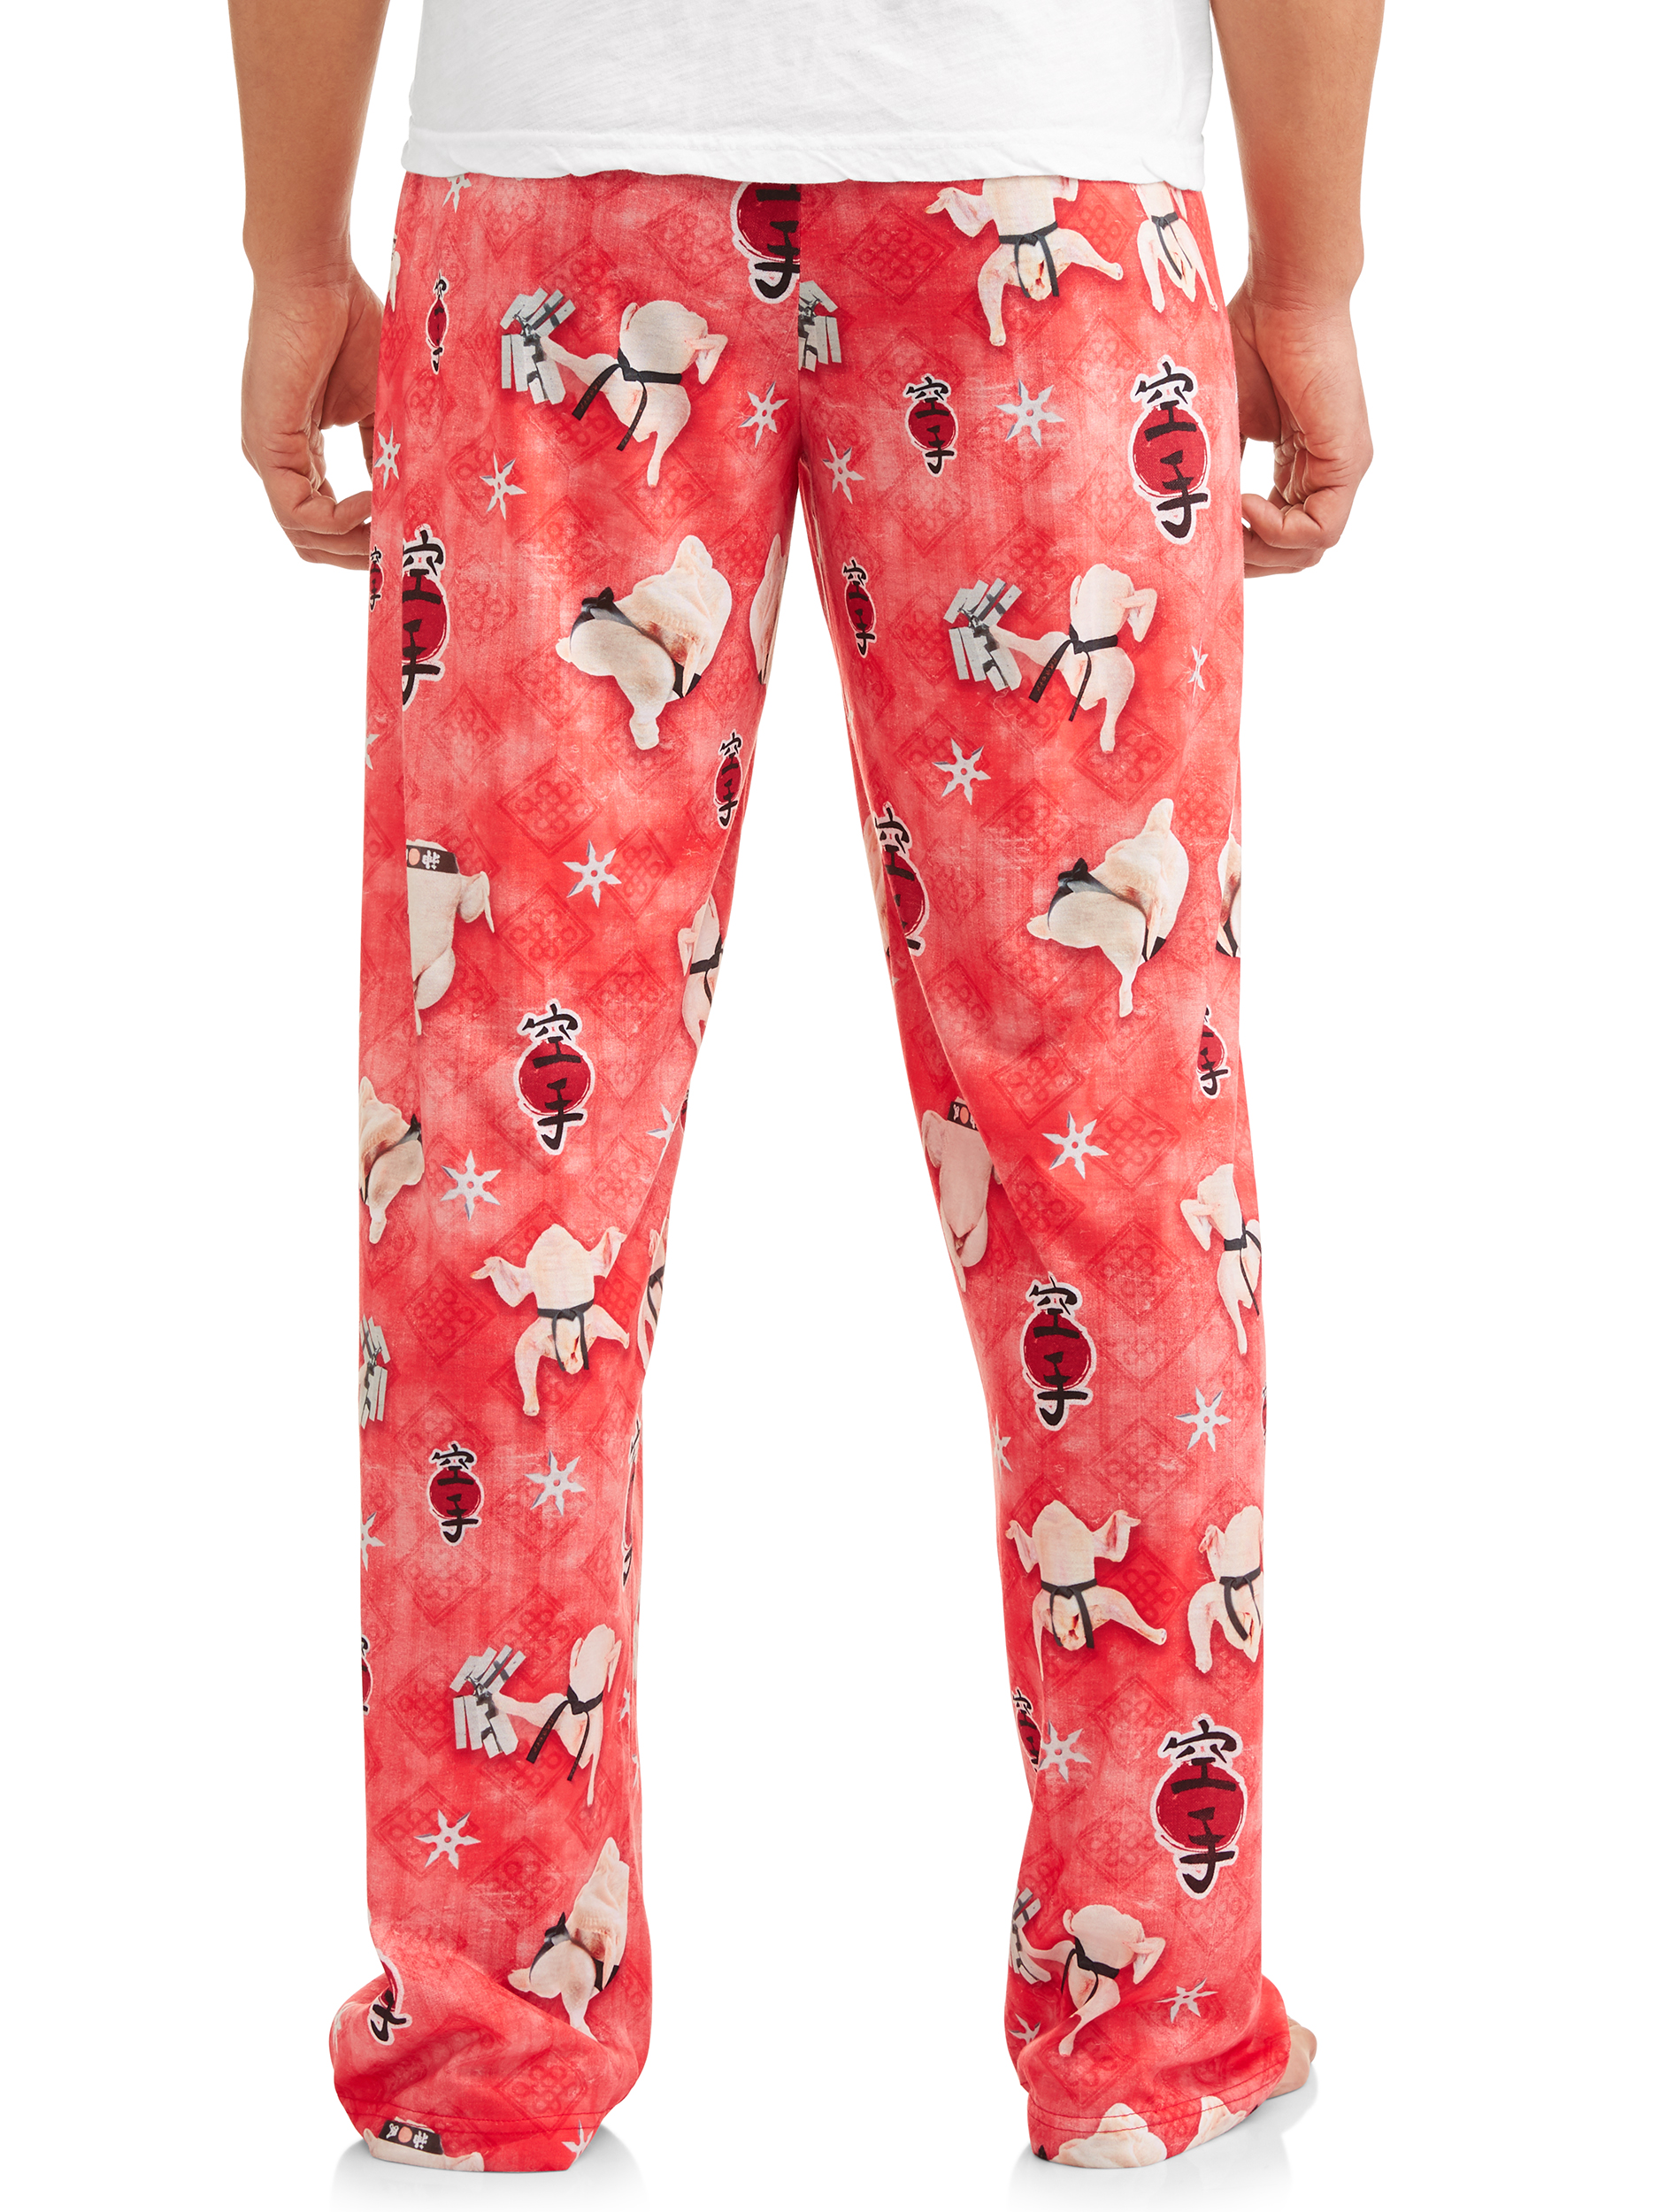 Owl Night Long Men’s Turkey Karate Pajama Pants - image 2 of 4